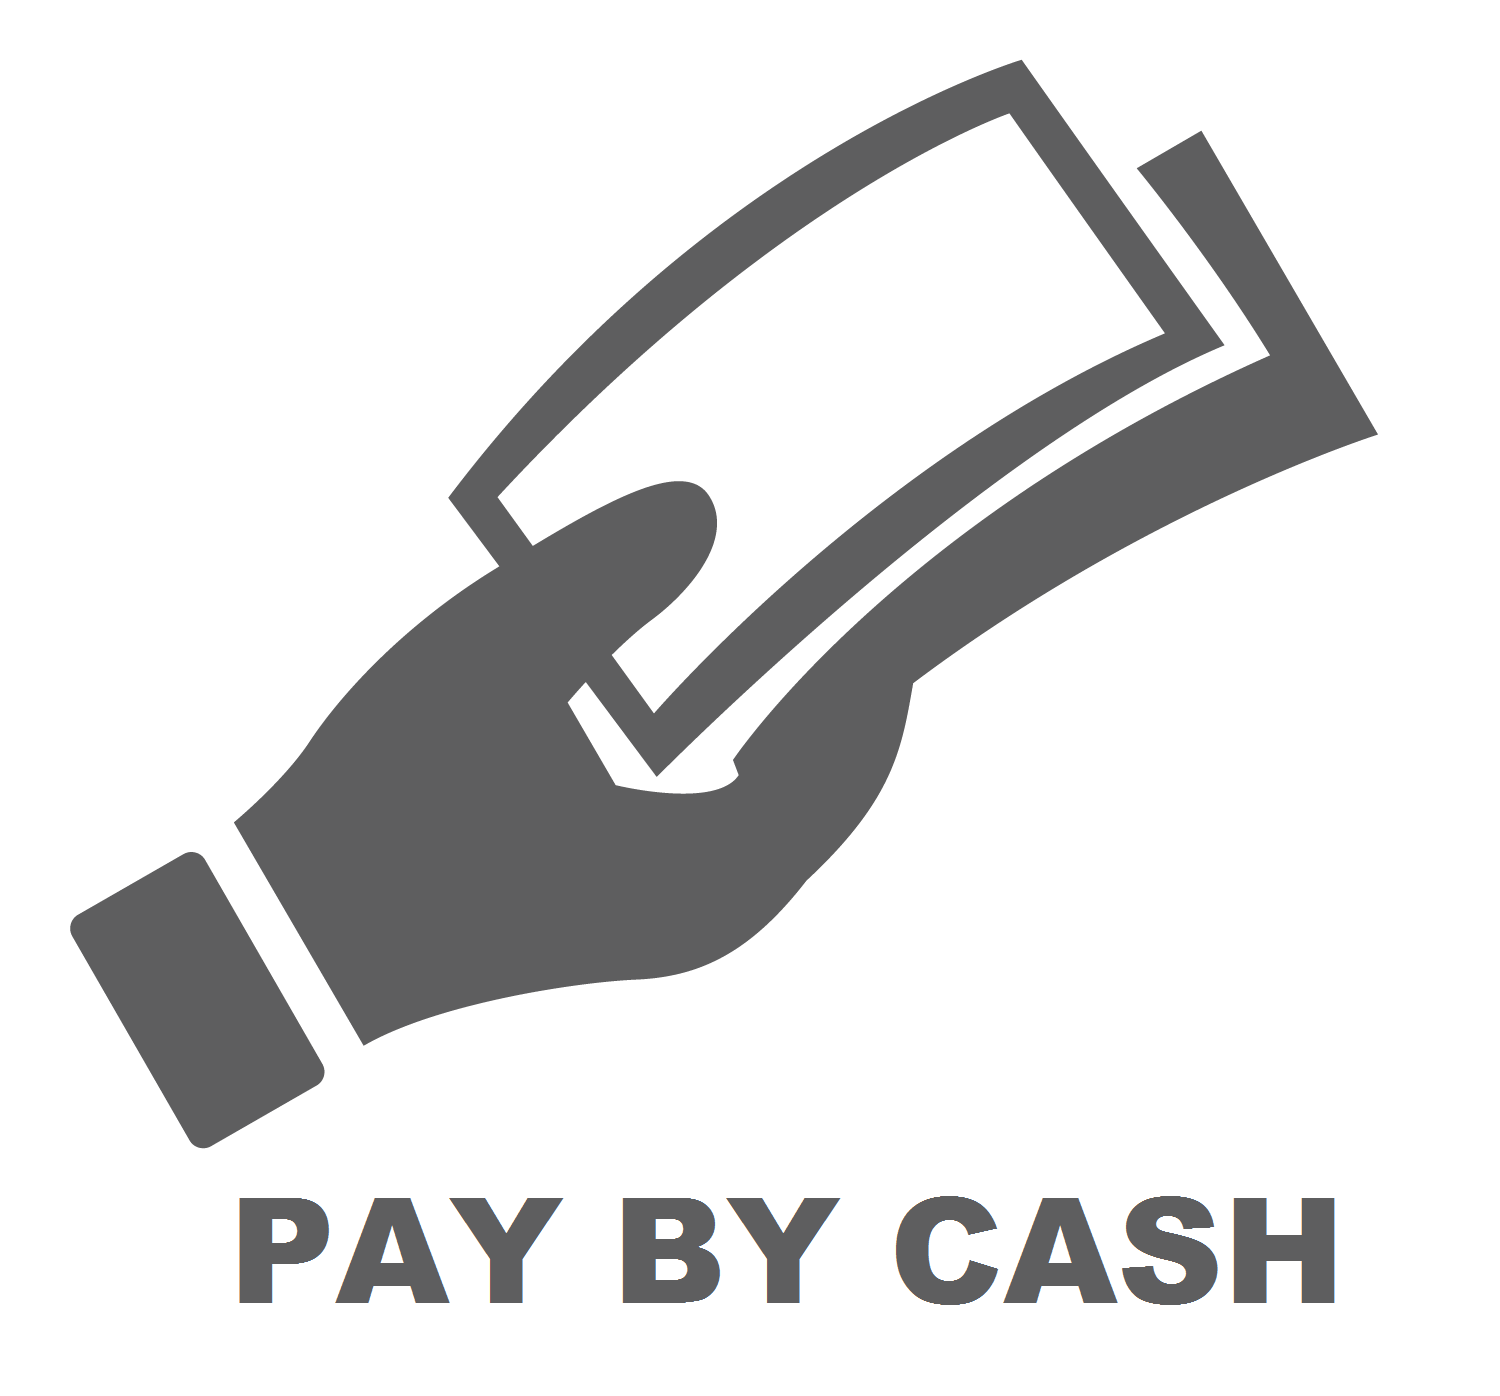 Cash payment